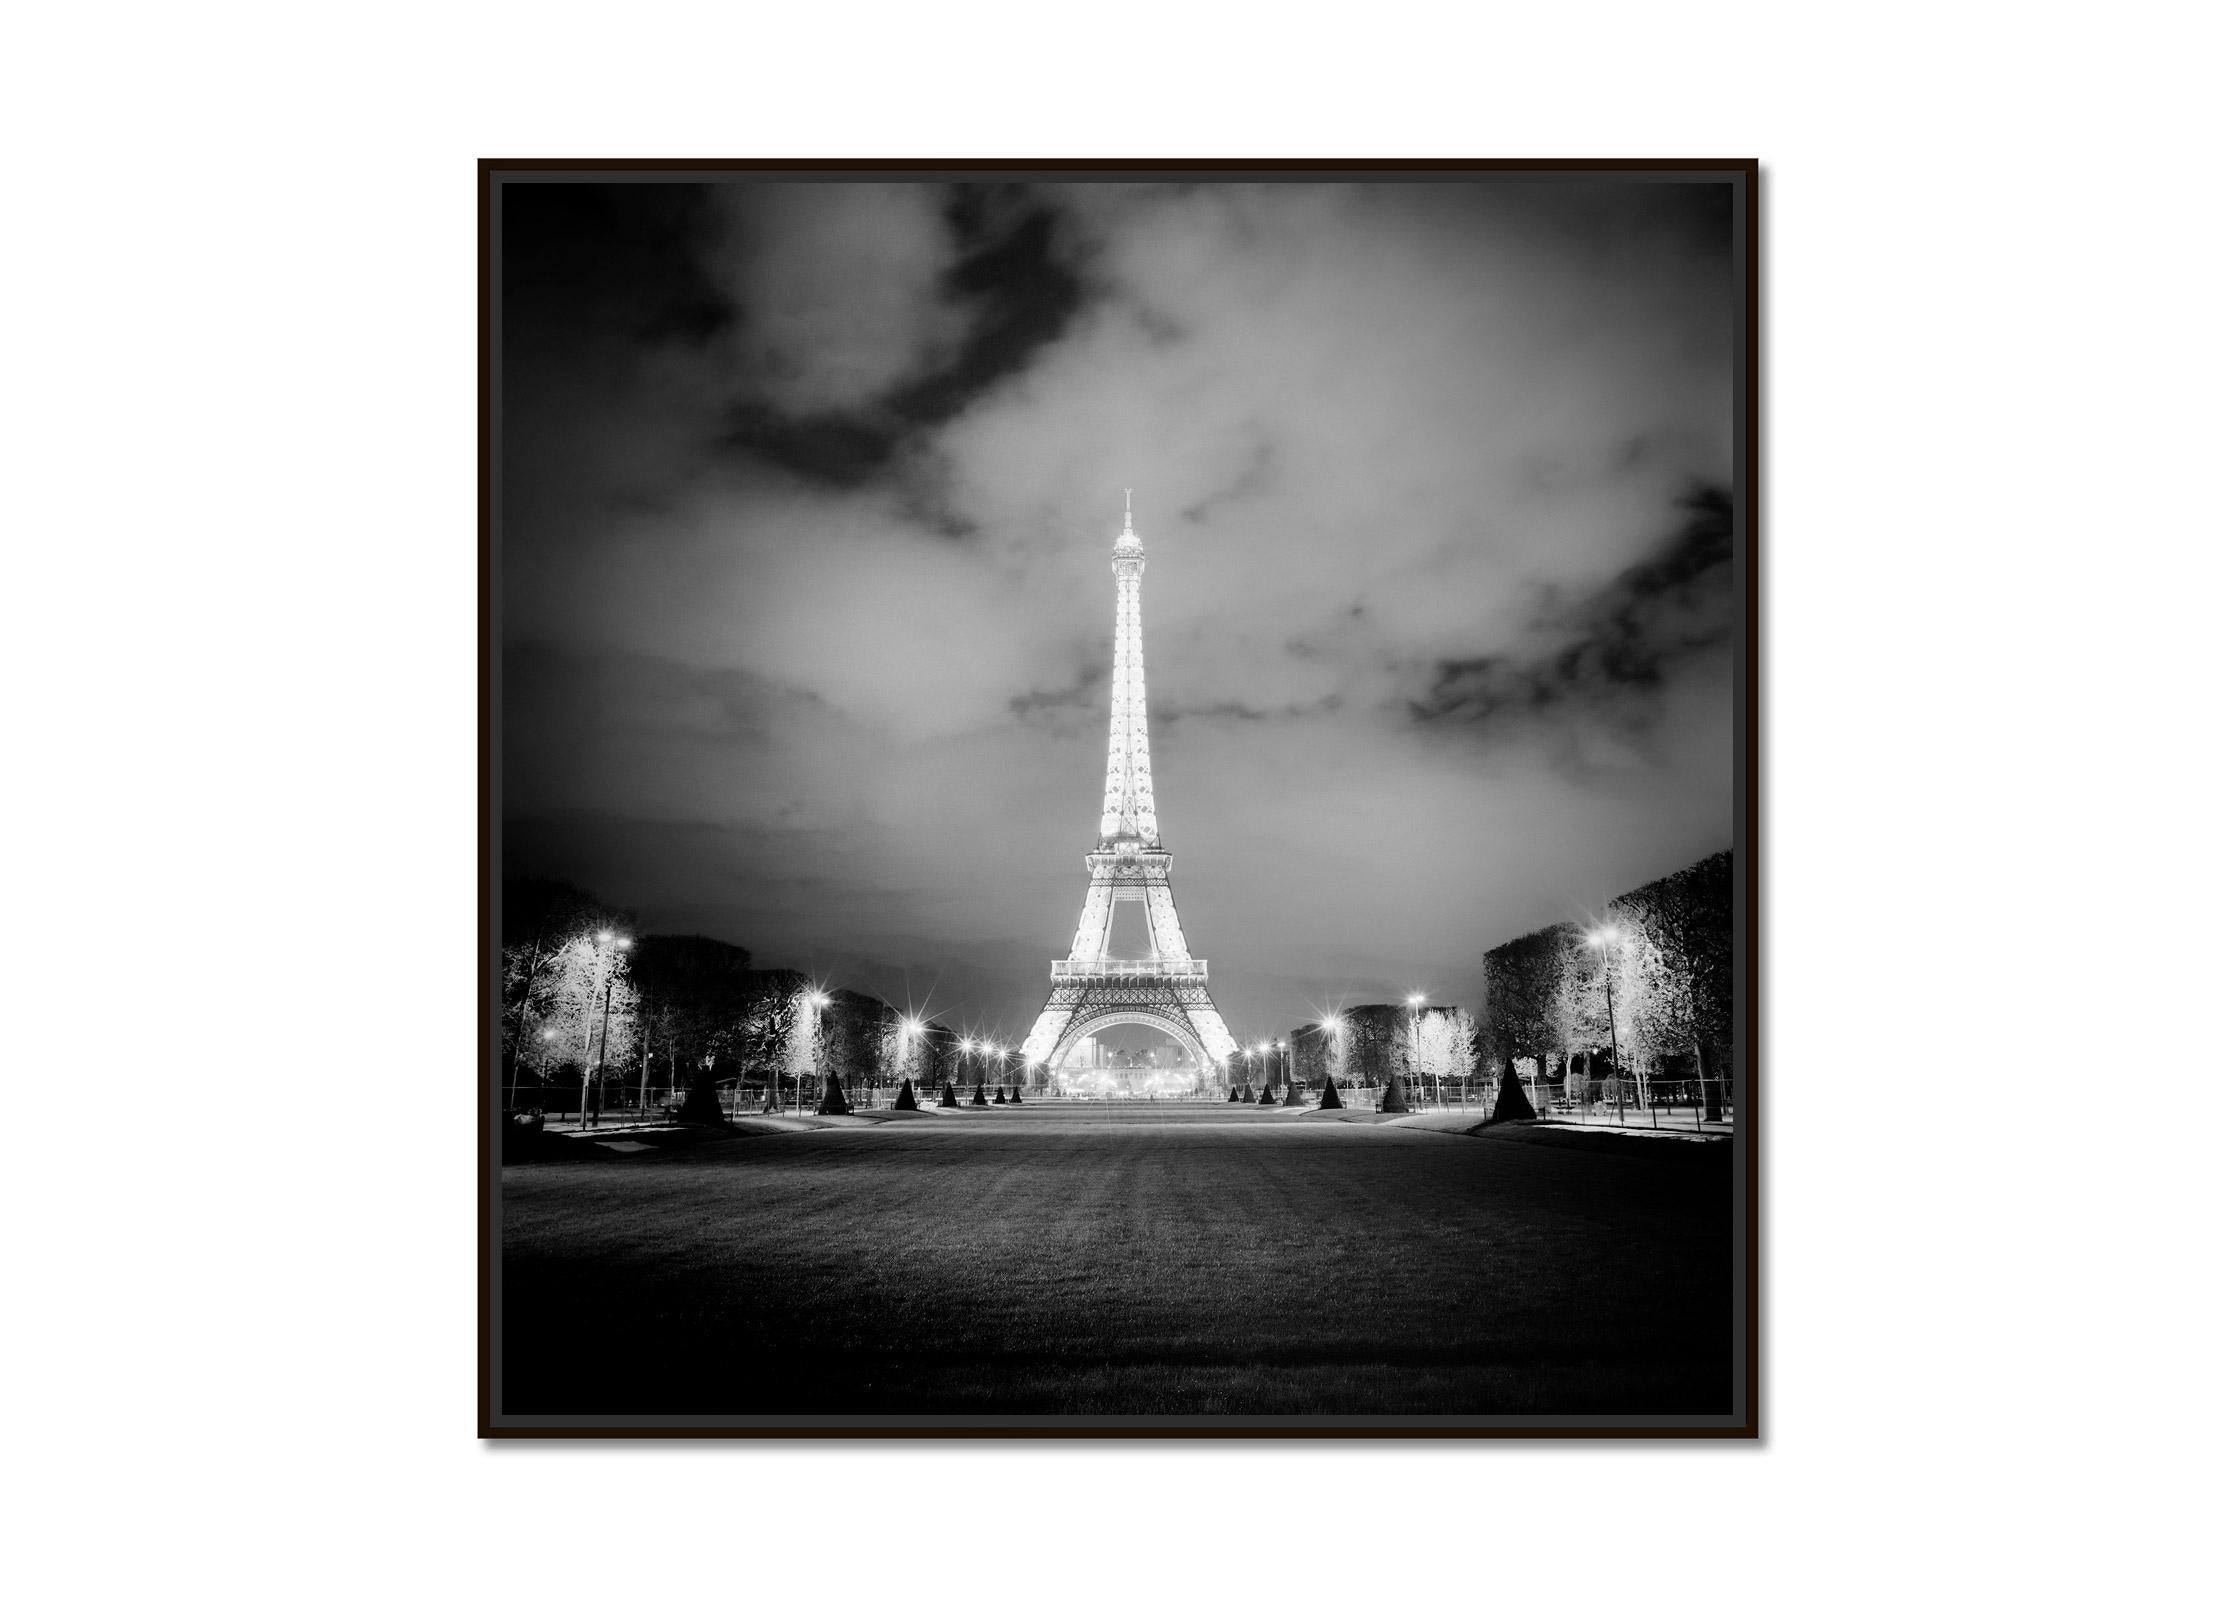 Tour Eiffel, Lights, Paris, spectacle de lumières, photographie en noir et blanc, paysage urbain - Photograph de Gerald Berghammer